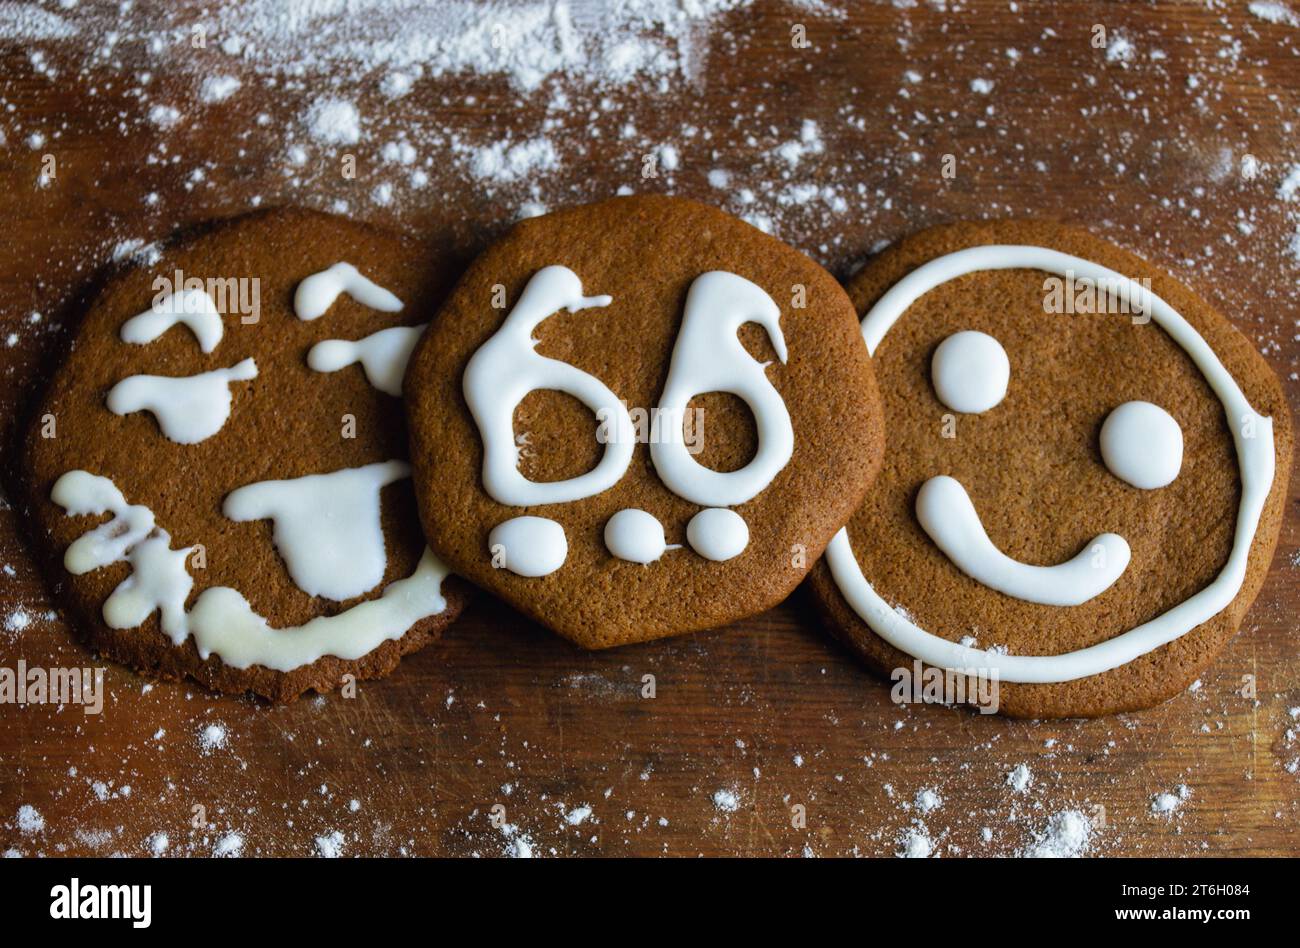 Tre biscotti dolci ricoperti di glassa bianca sotto forma di emoticon e il numero 66 giacciono su una vecchia tavola circondata da farina Foto Stock